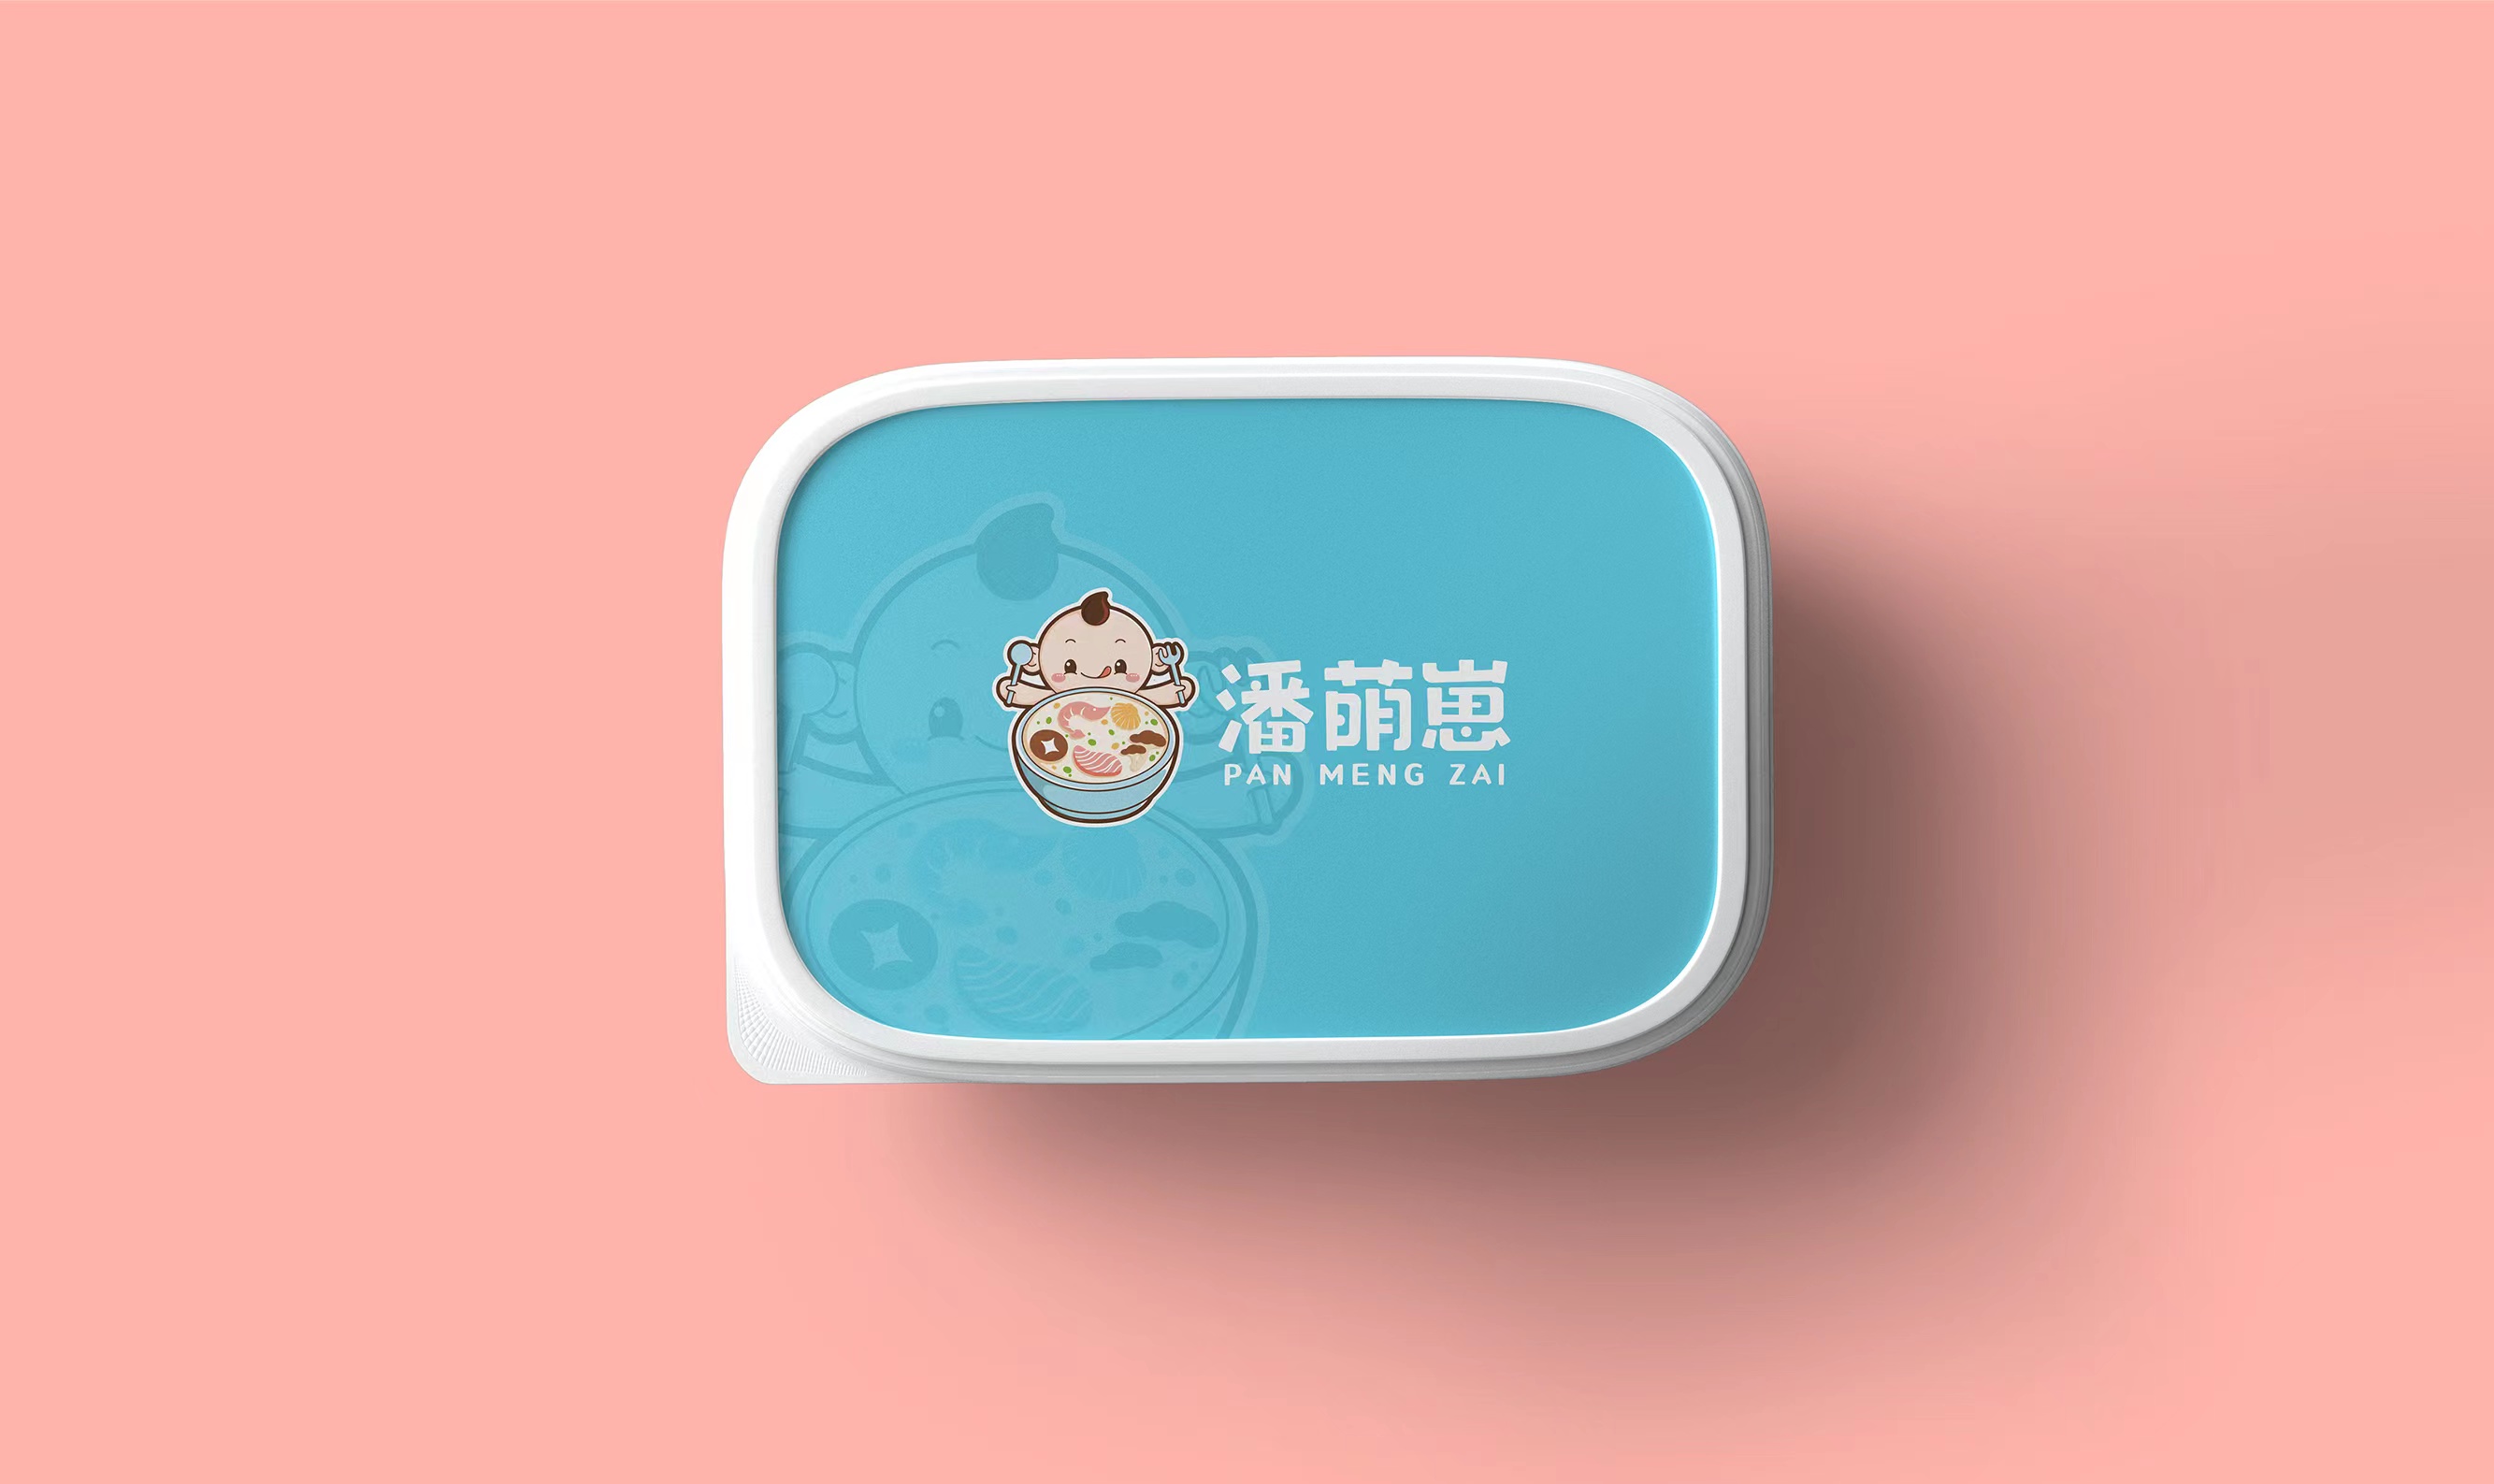 潘萌崽营养餐-儿童辅食产品的品牌及包装设计 产品包装设计 第11张